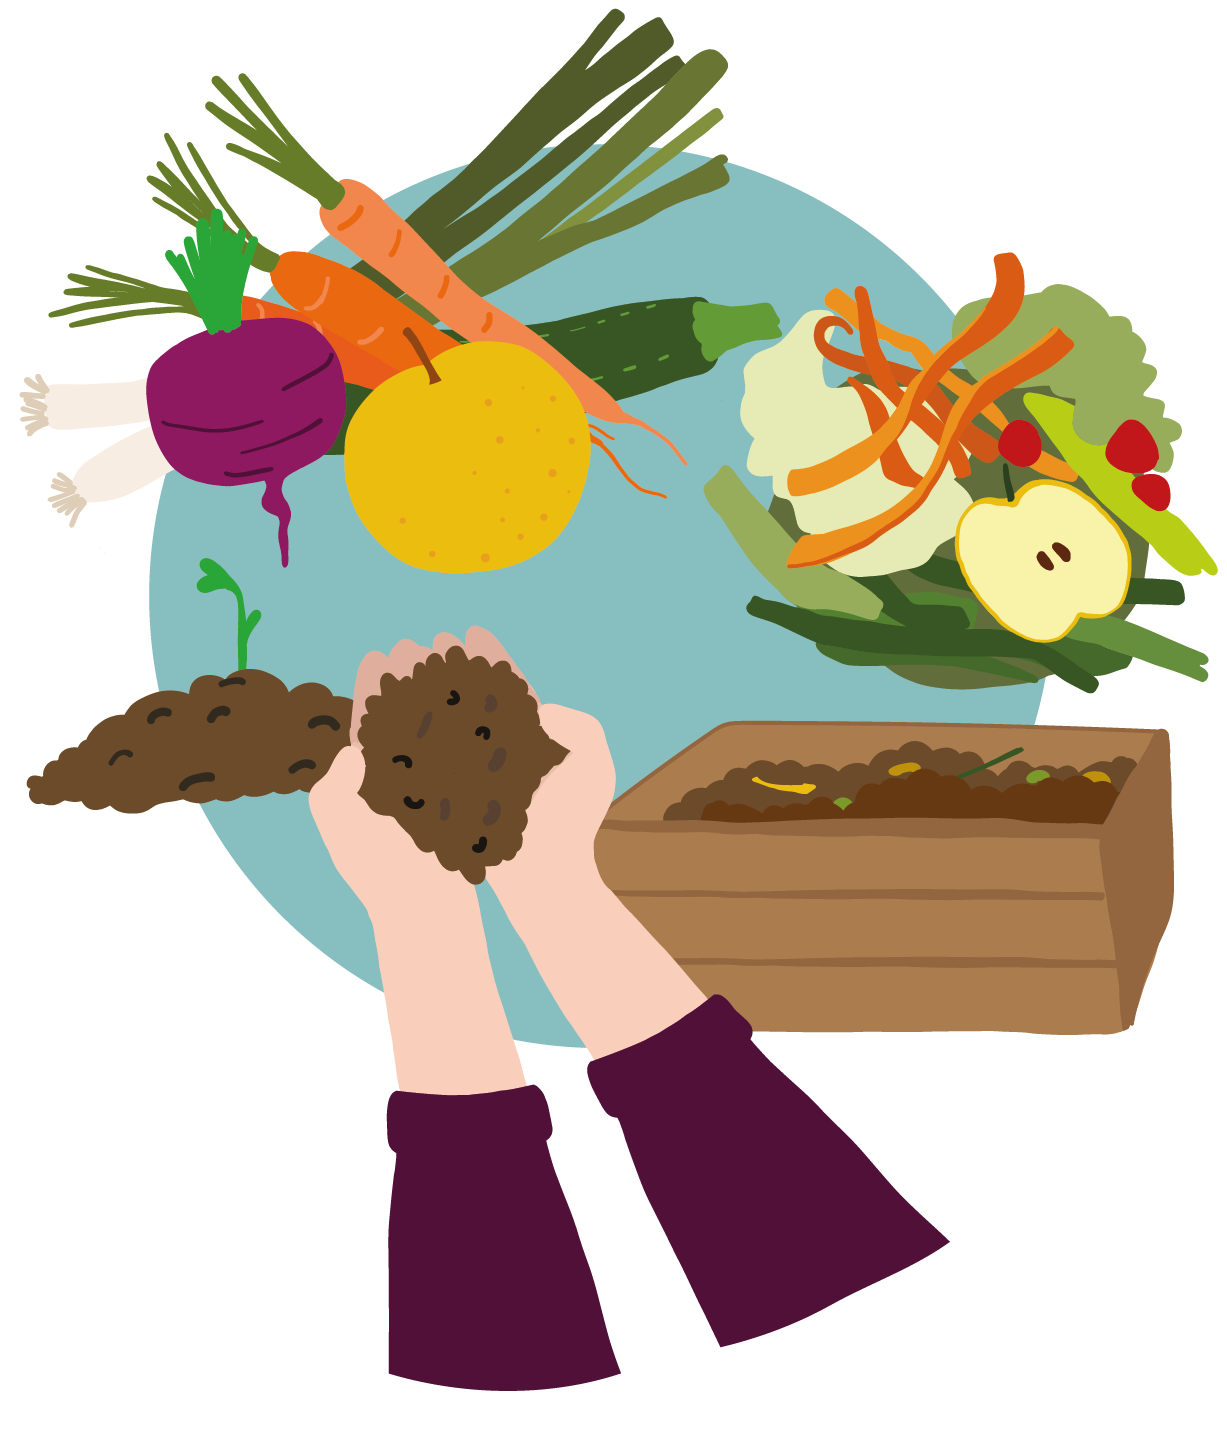 Dessin d'un cycle : un ensemble de légumes, betterave, carottes, poireau, dont on récupère les épluchures, mises au compost, utilisé pour faire pousser les légumes du début.